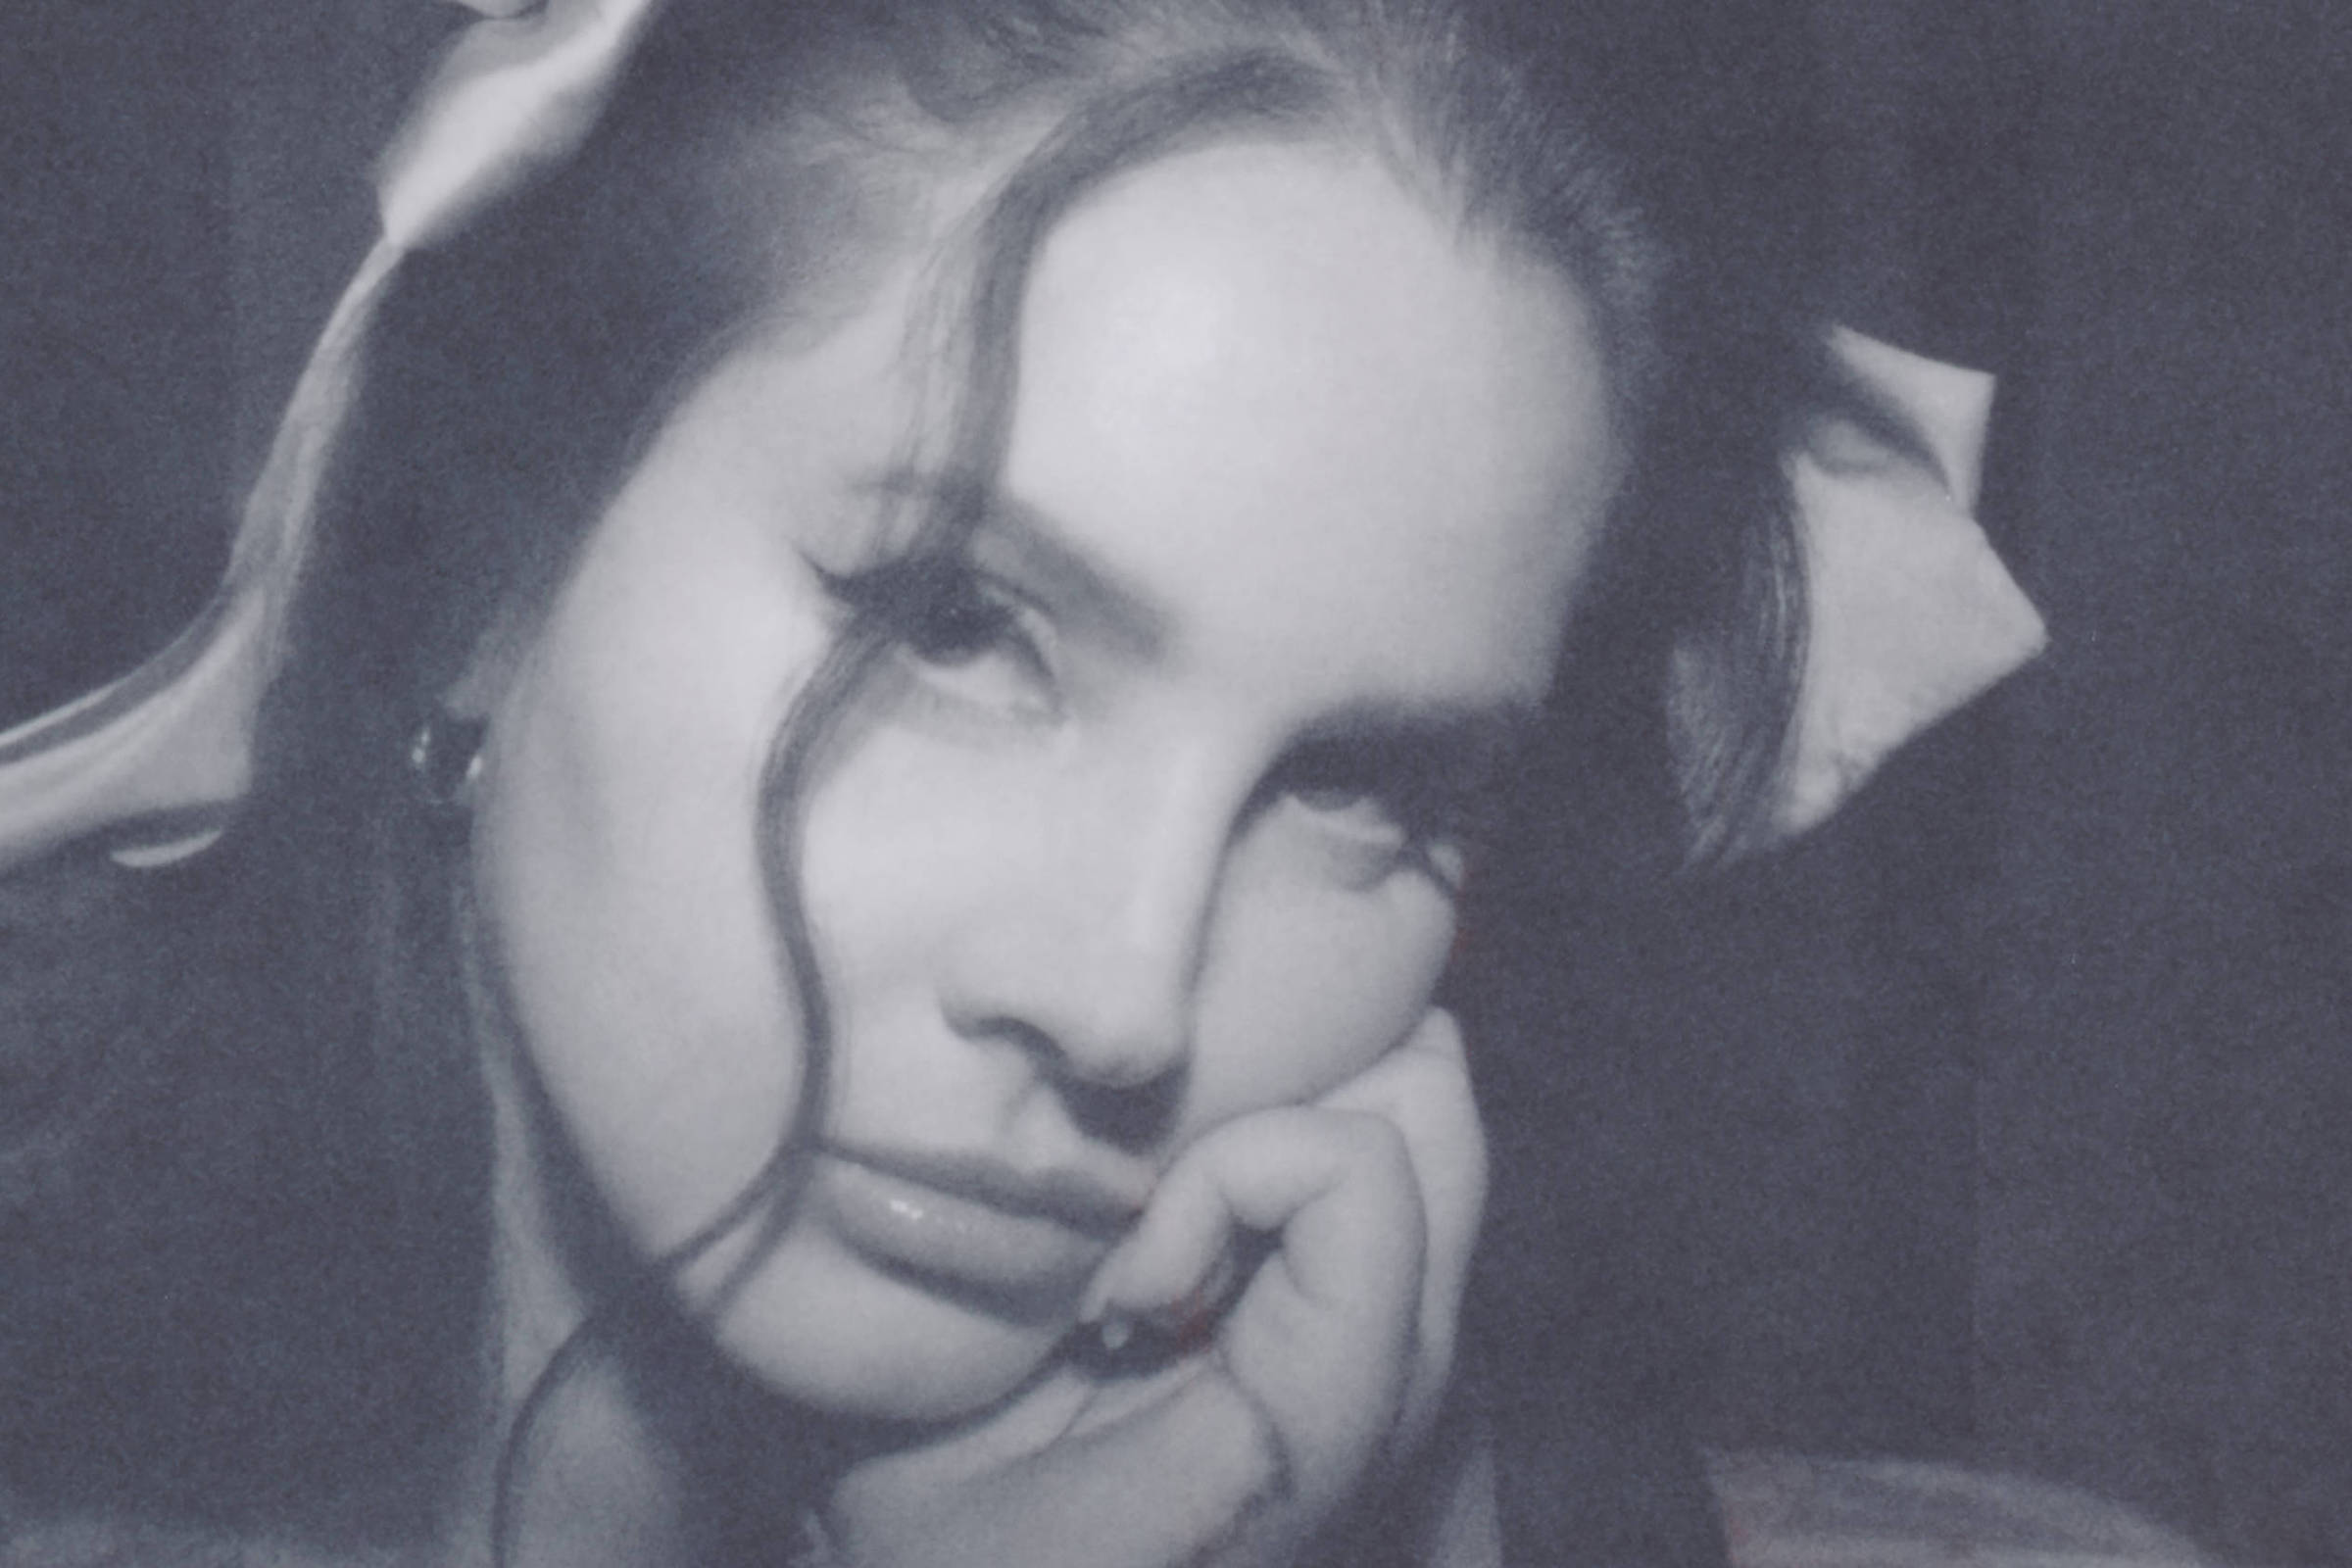 The Grants': Lana Del Rey lança música em homenagem à família - Cultura -  Estado de Minas, minha vez letra manu paiva 